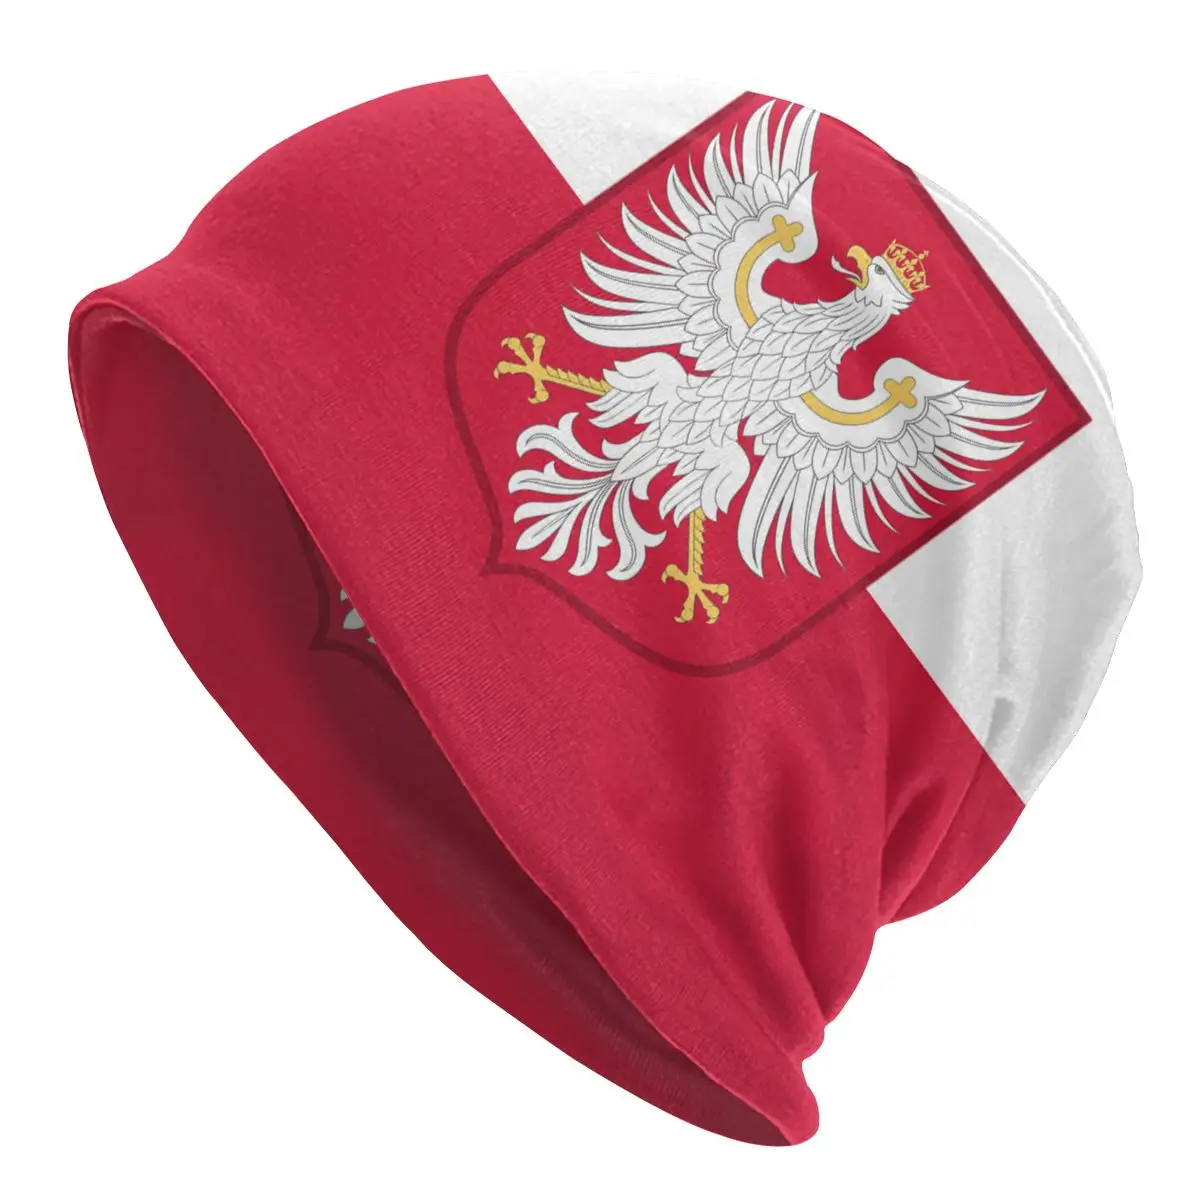 Kaput Kış Sıcak Örme Şapka Erkekler Kadınlar Polonya Krallığı Bayrağı Moda Skullies Beanies Kapaklar Yetişkin Bere Şapka Açık Kayak Kap